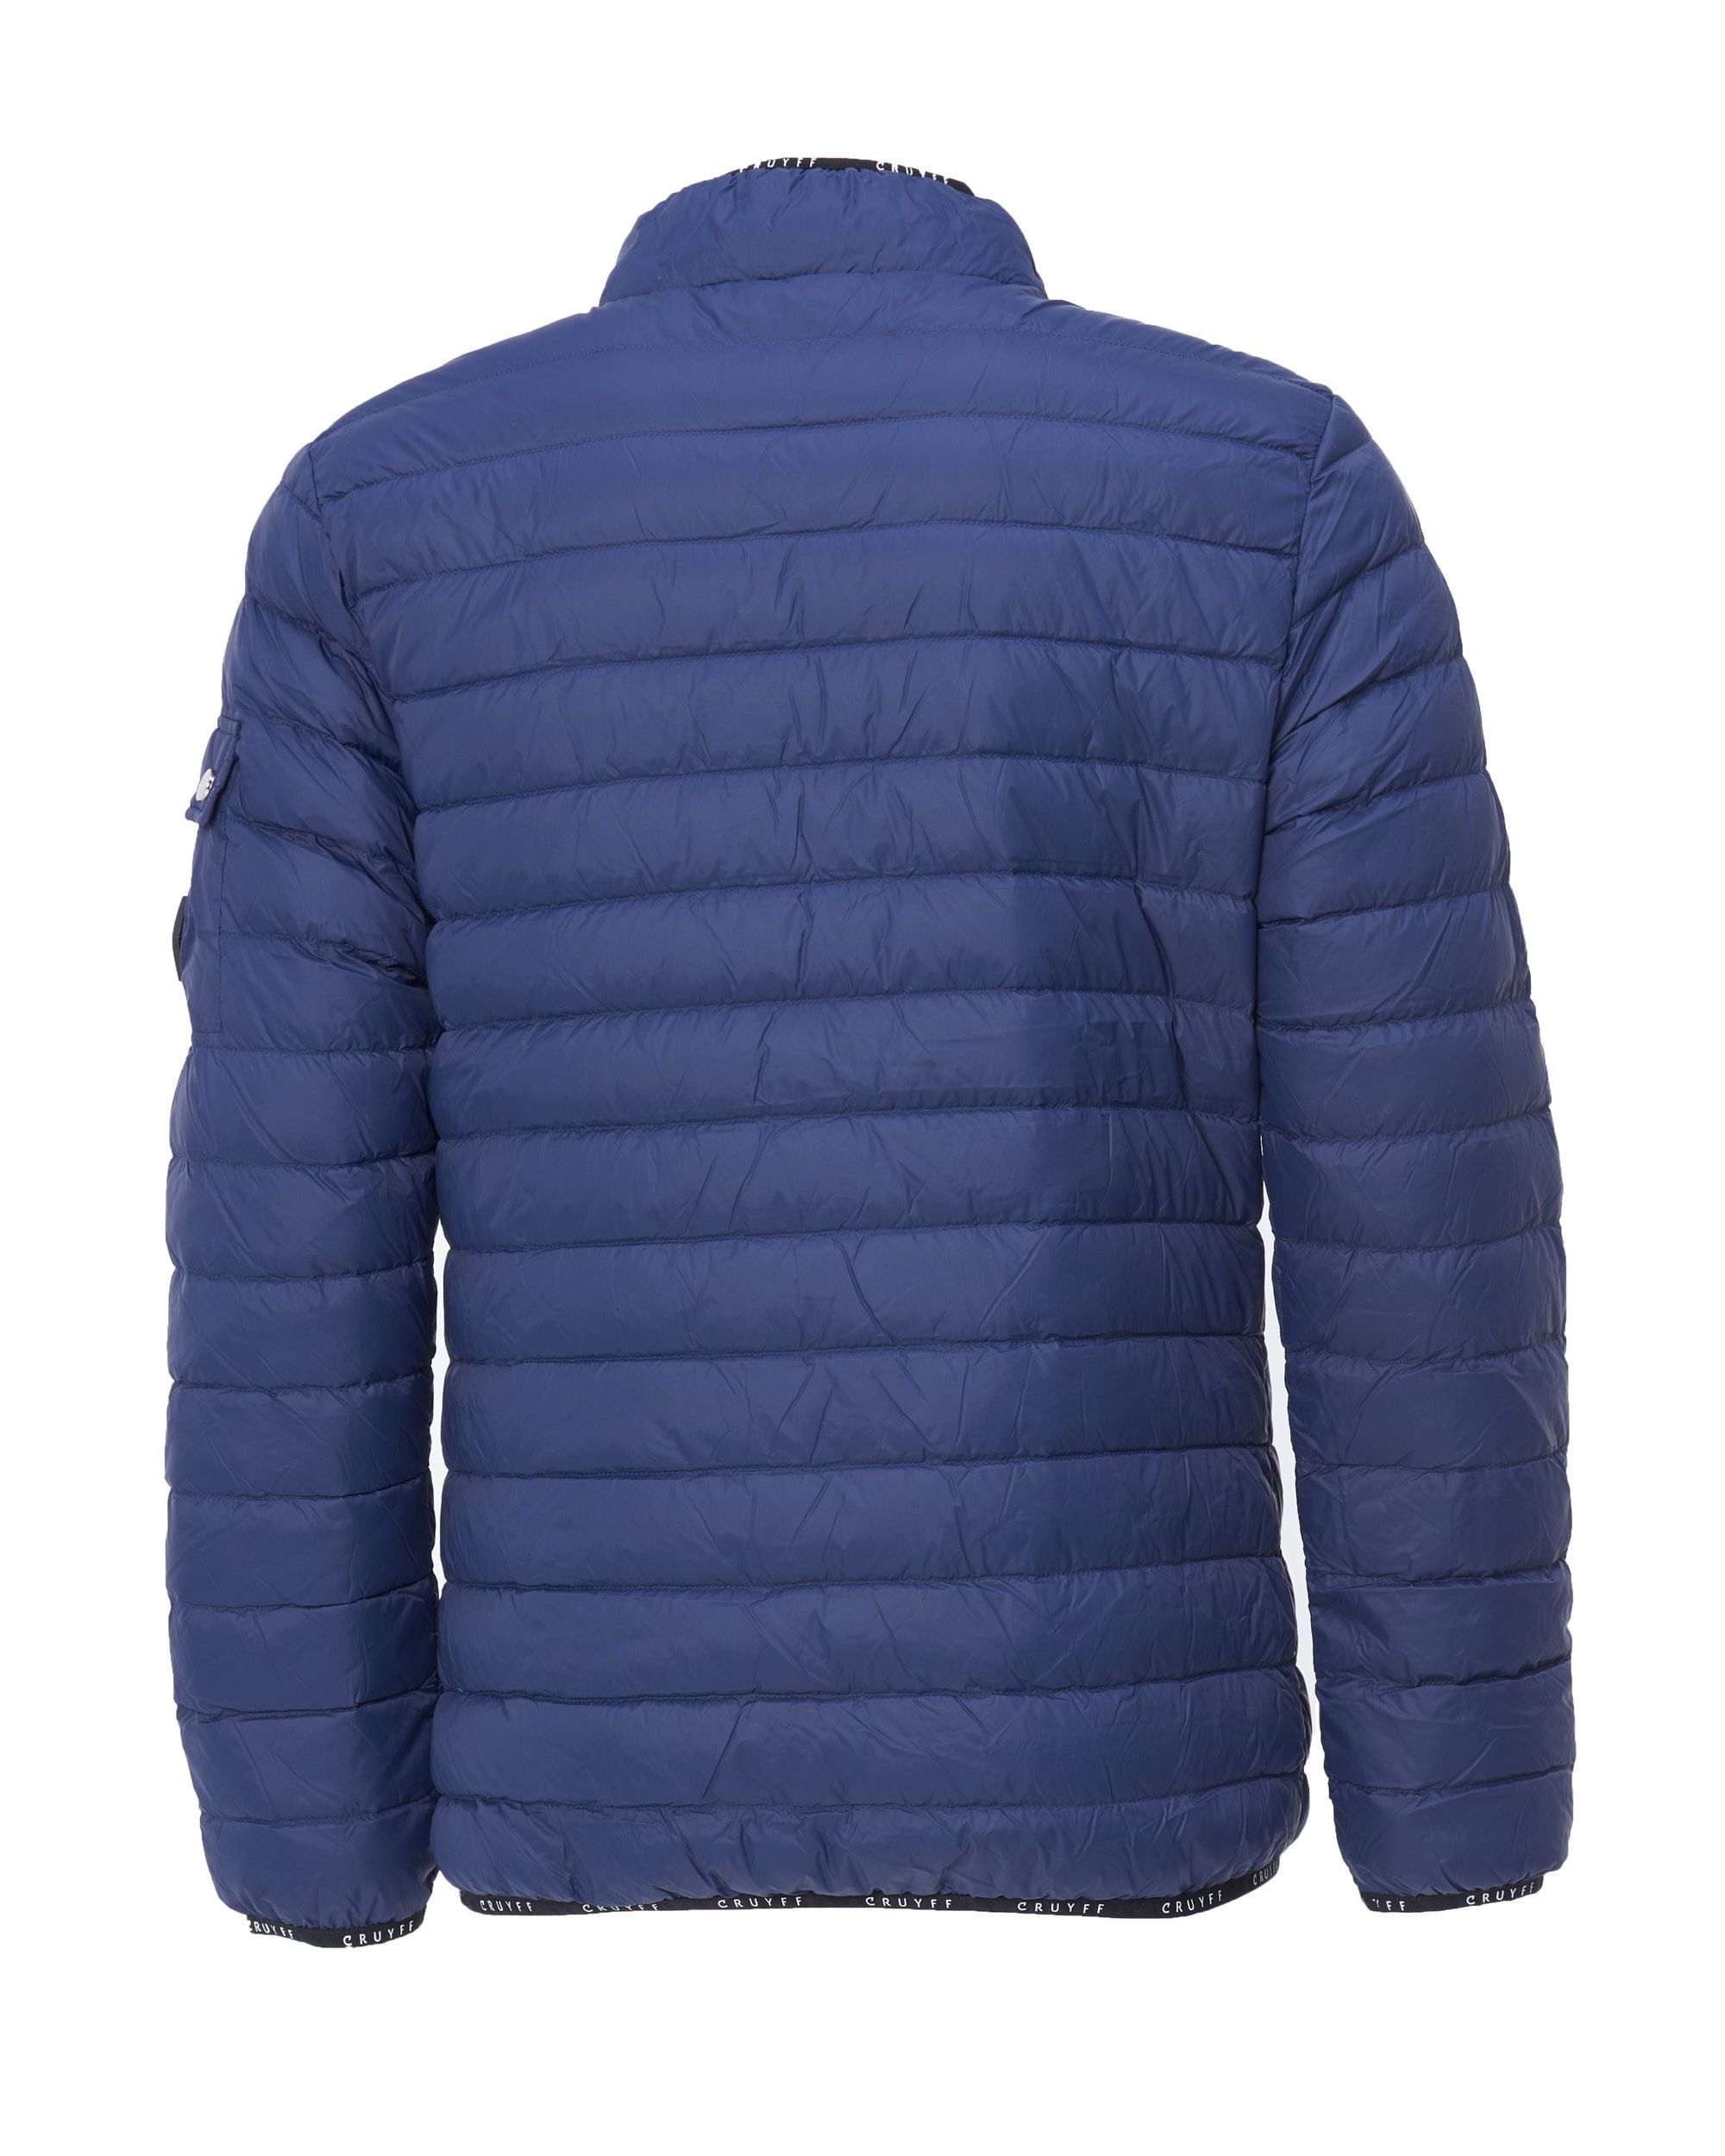 Cruyff Perdu Gewatteerde jas Donker blauw 078805-001-L